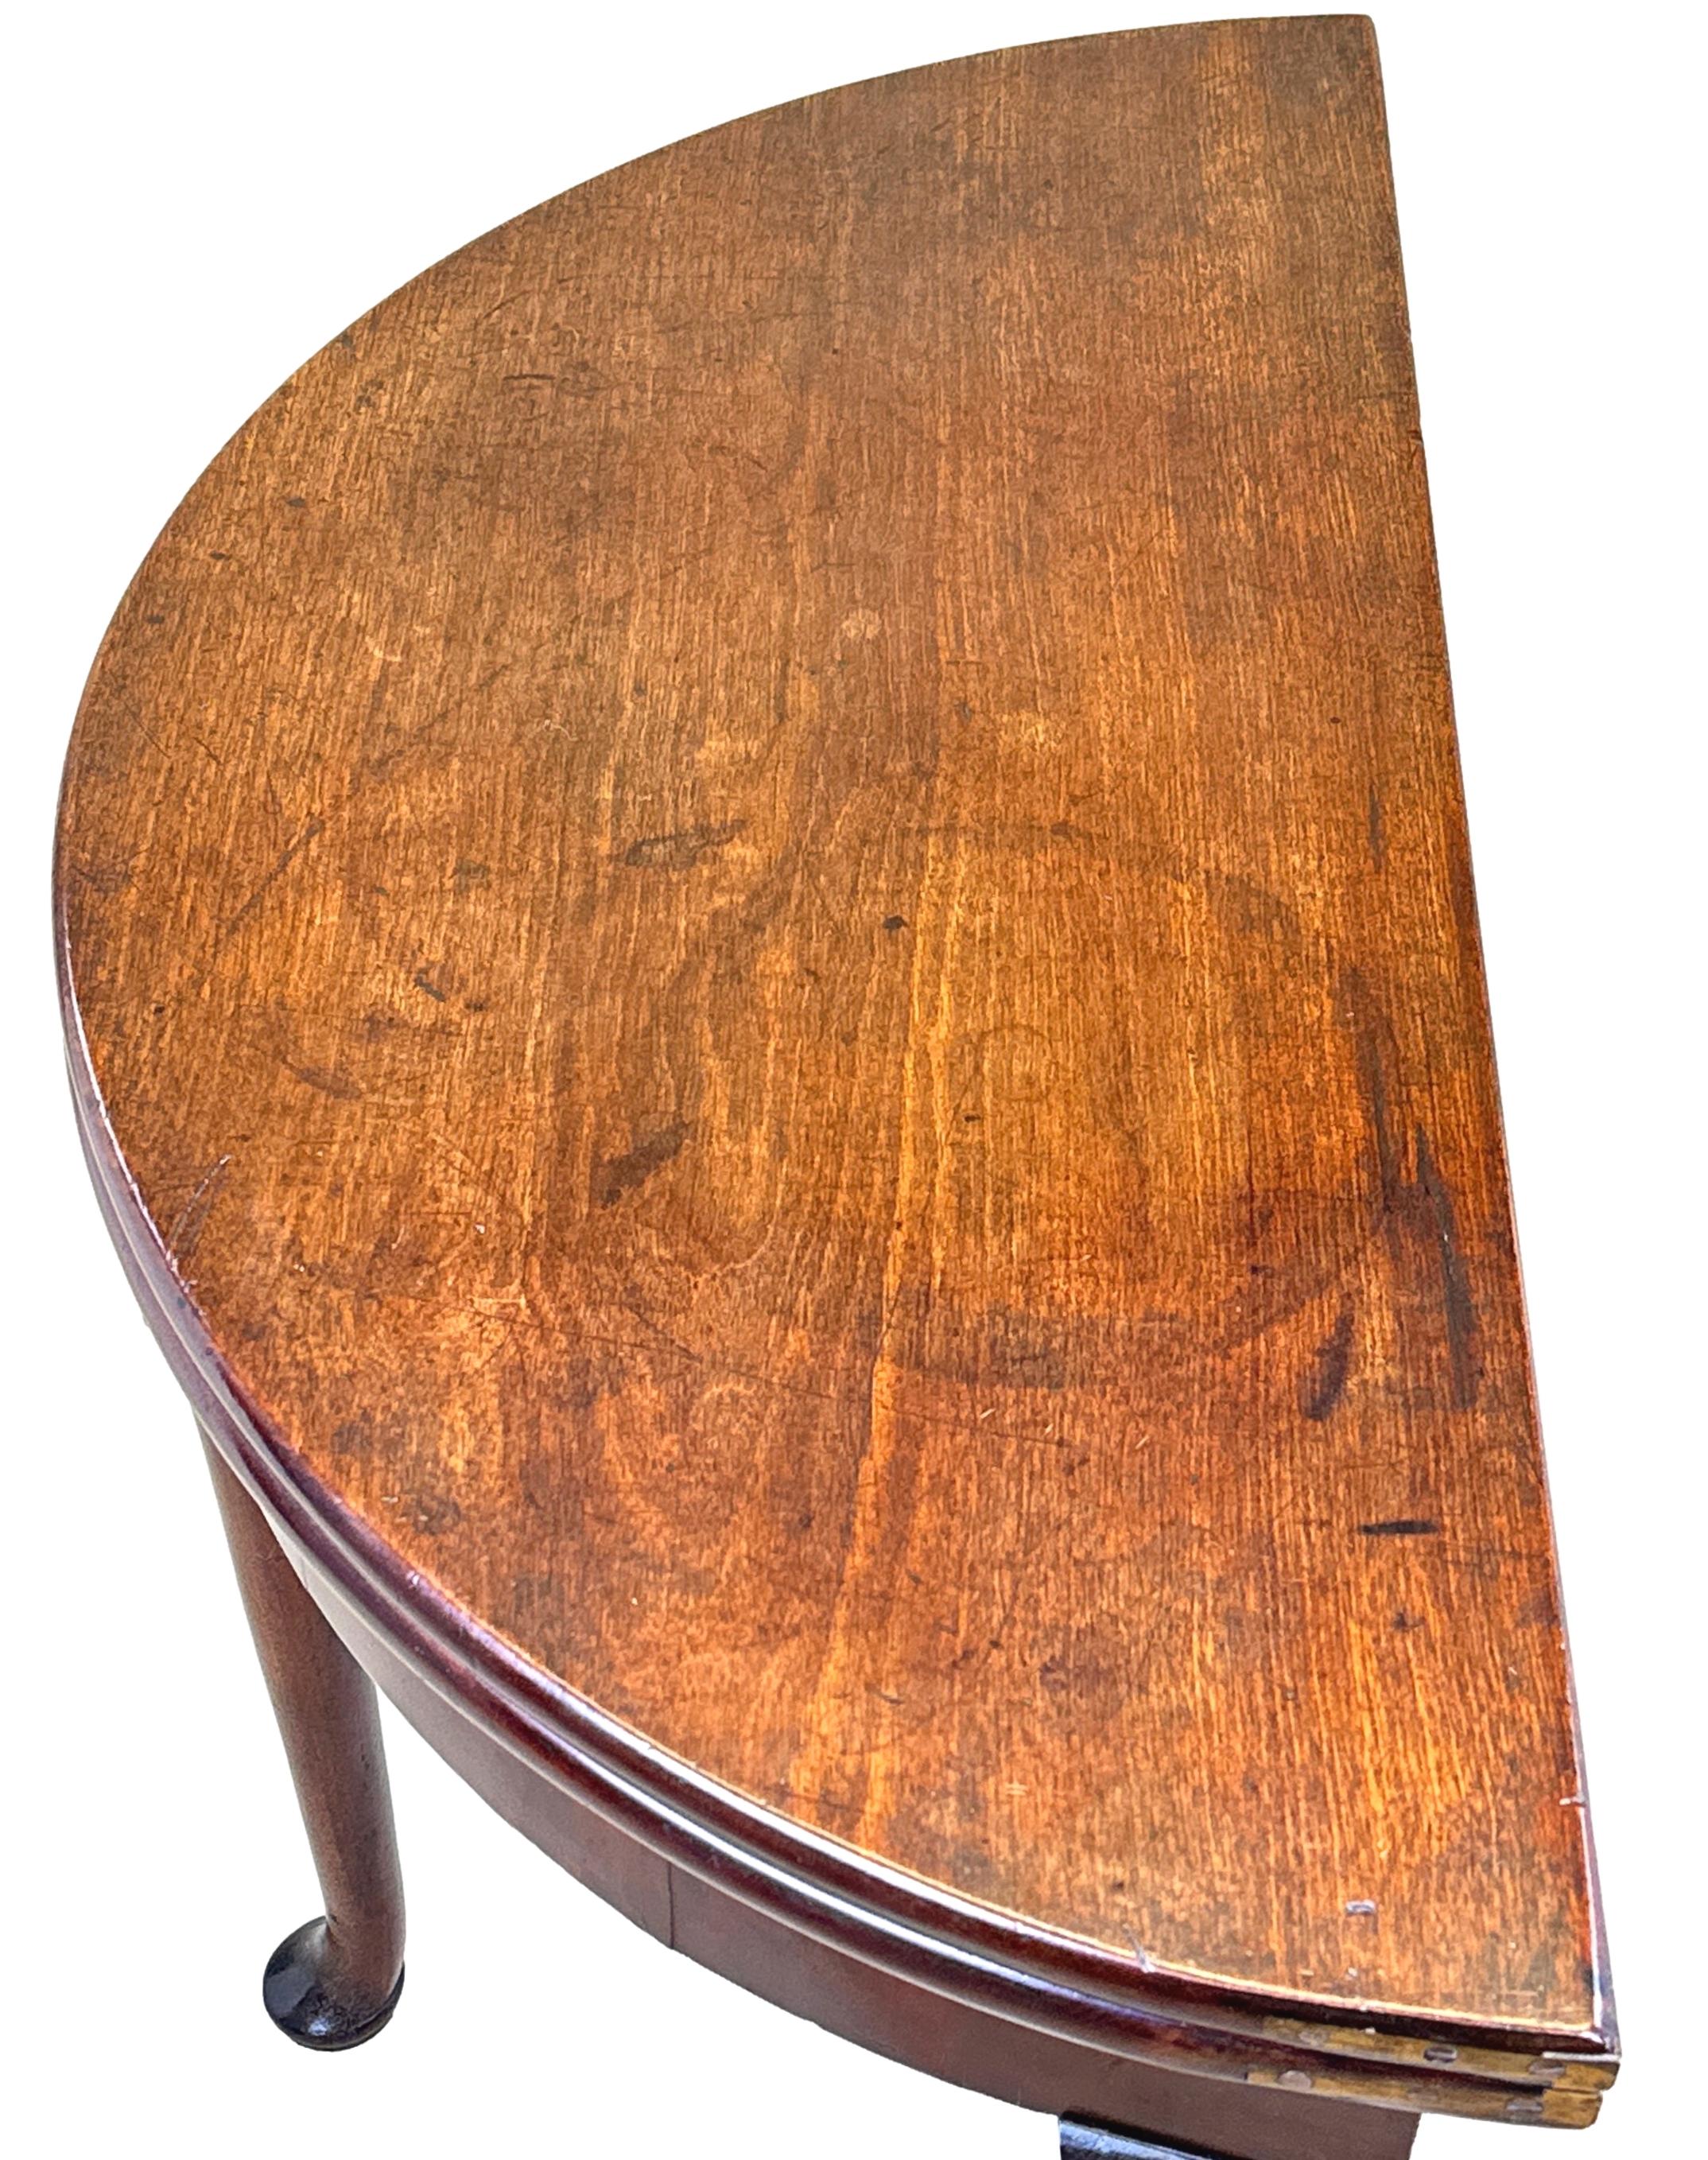 Table à thé Demi Lune en acajou de très bonne qualité, datant du début du XVIIIe siècle, d'époque George II, d'une couleur et d'une patine intactes exceptionnelles, avec un plateau rabattable bien figuré, renfermant un compartiment de rangement,